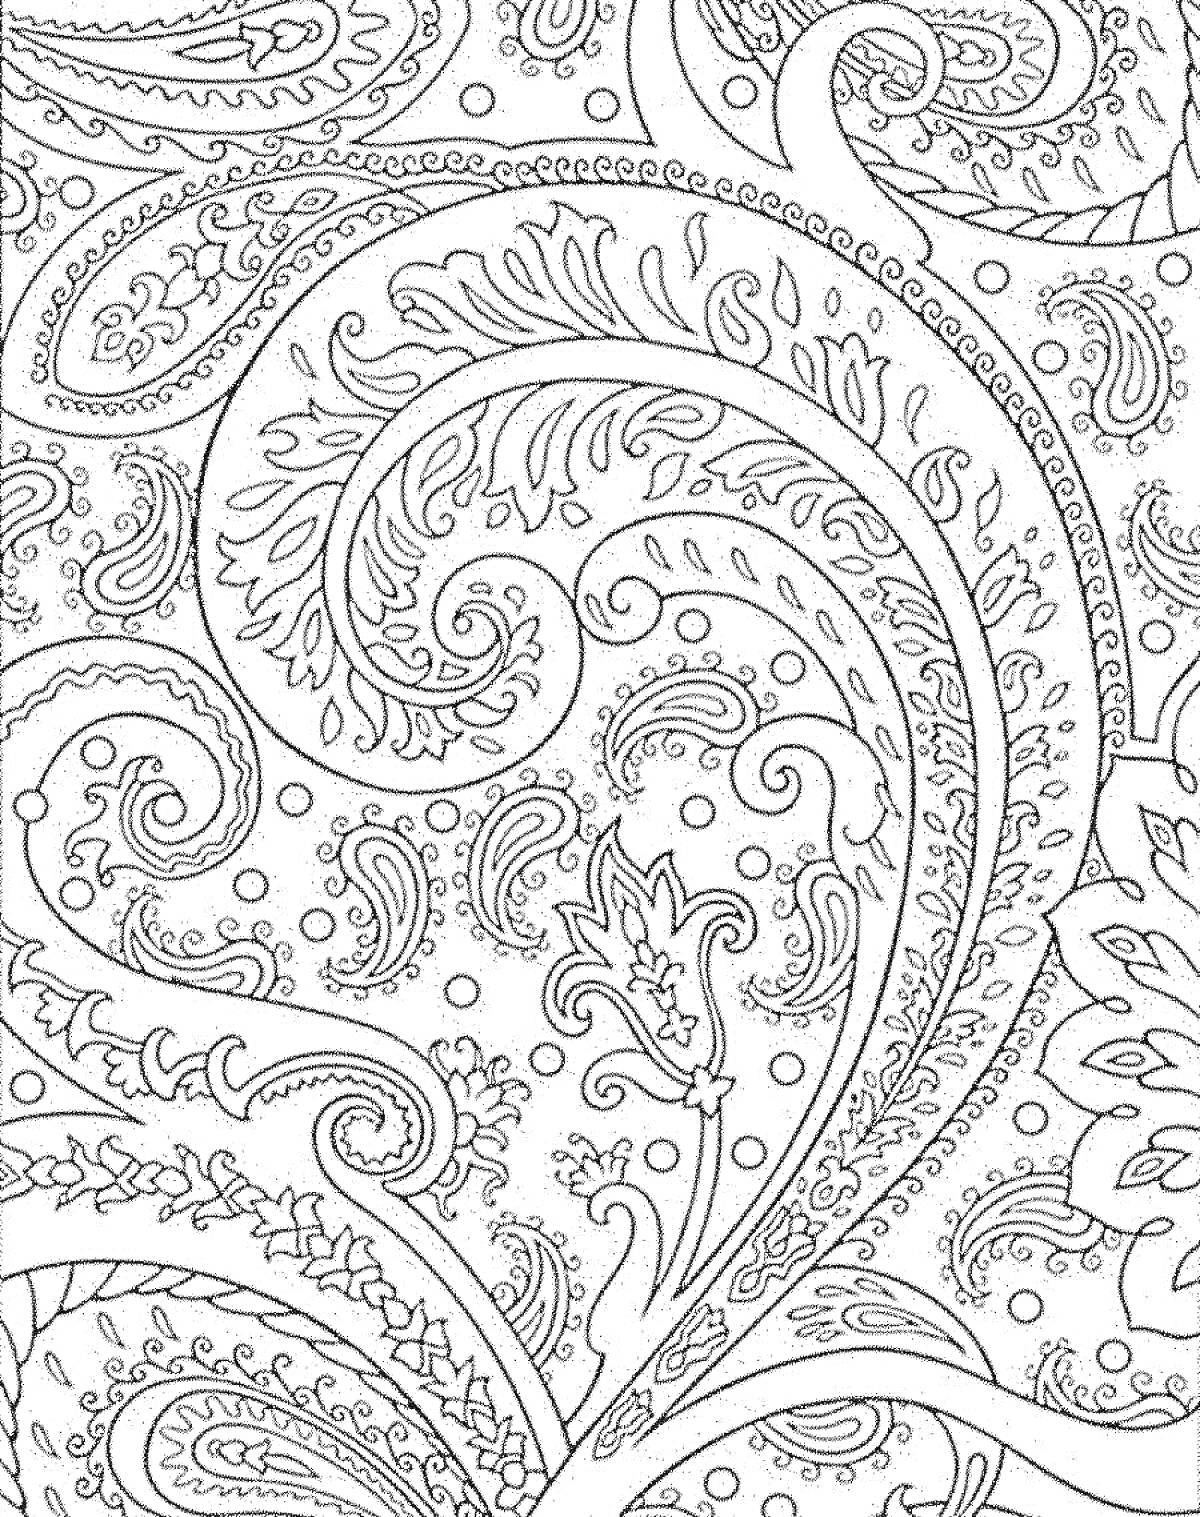 Раскраска Пейсли с завитками и цветочными элементами на фоне множества мелких узоров